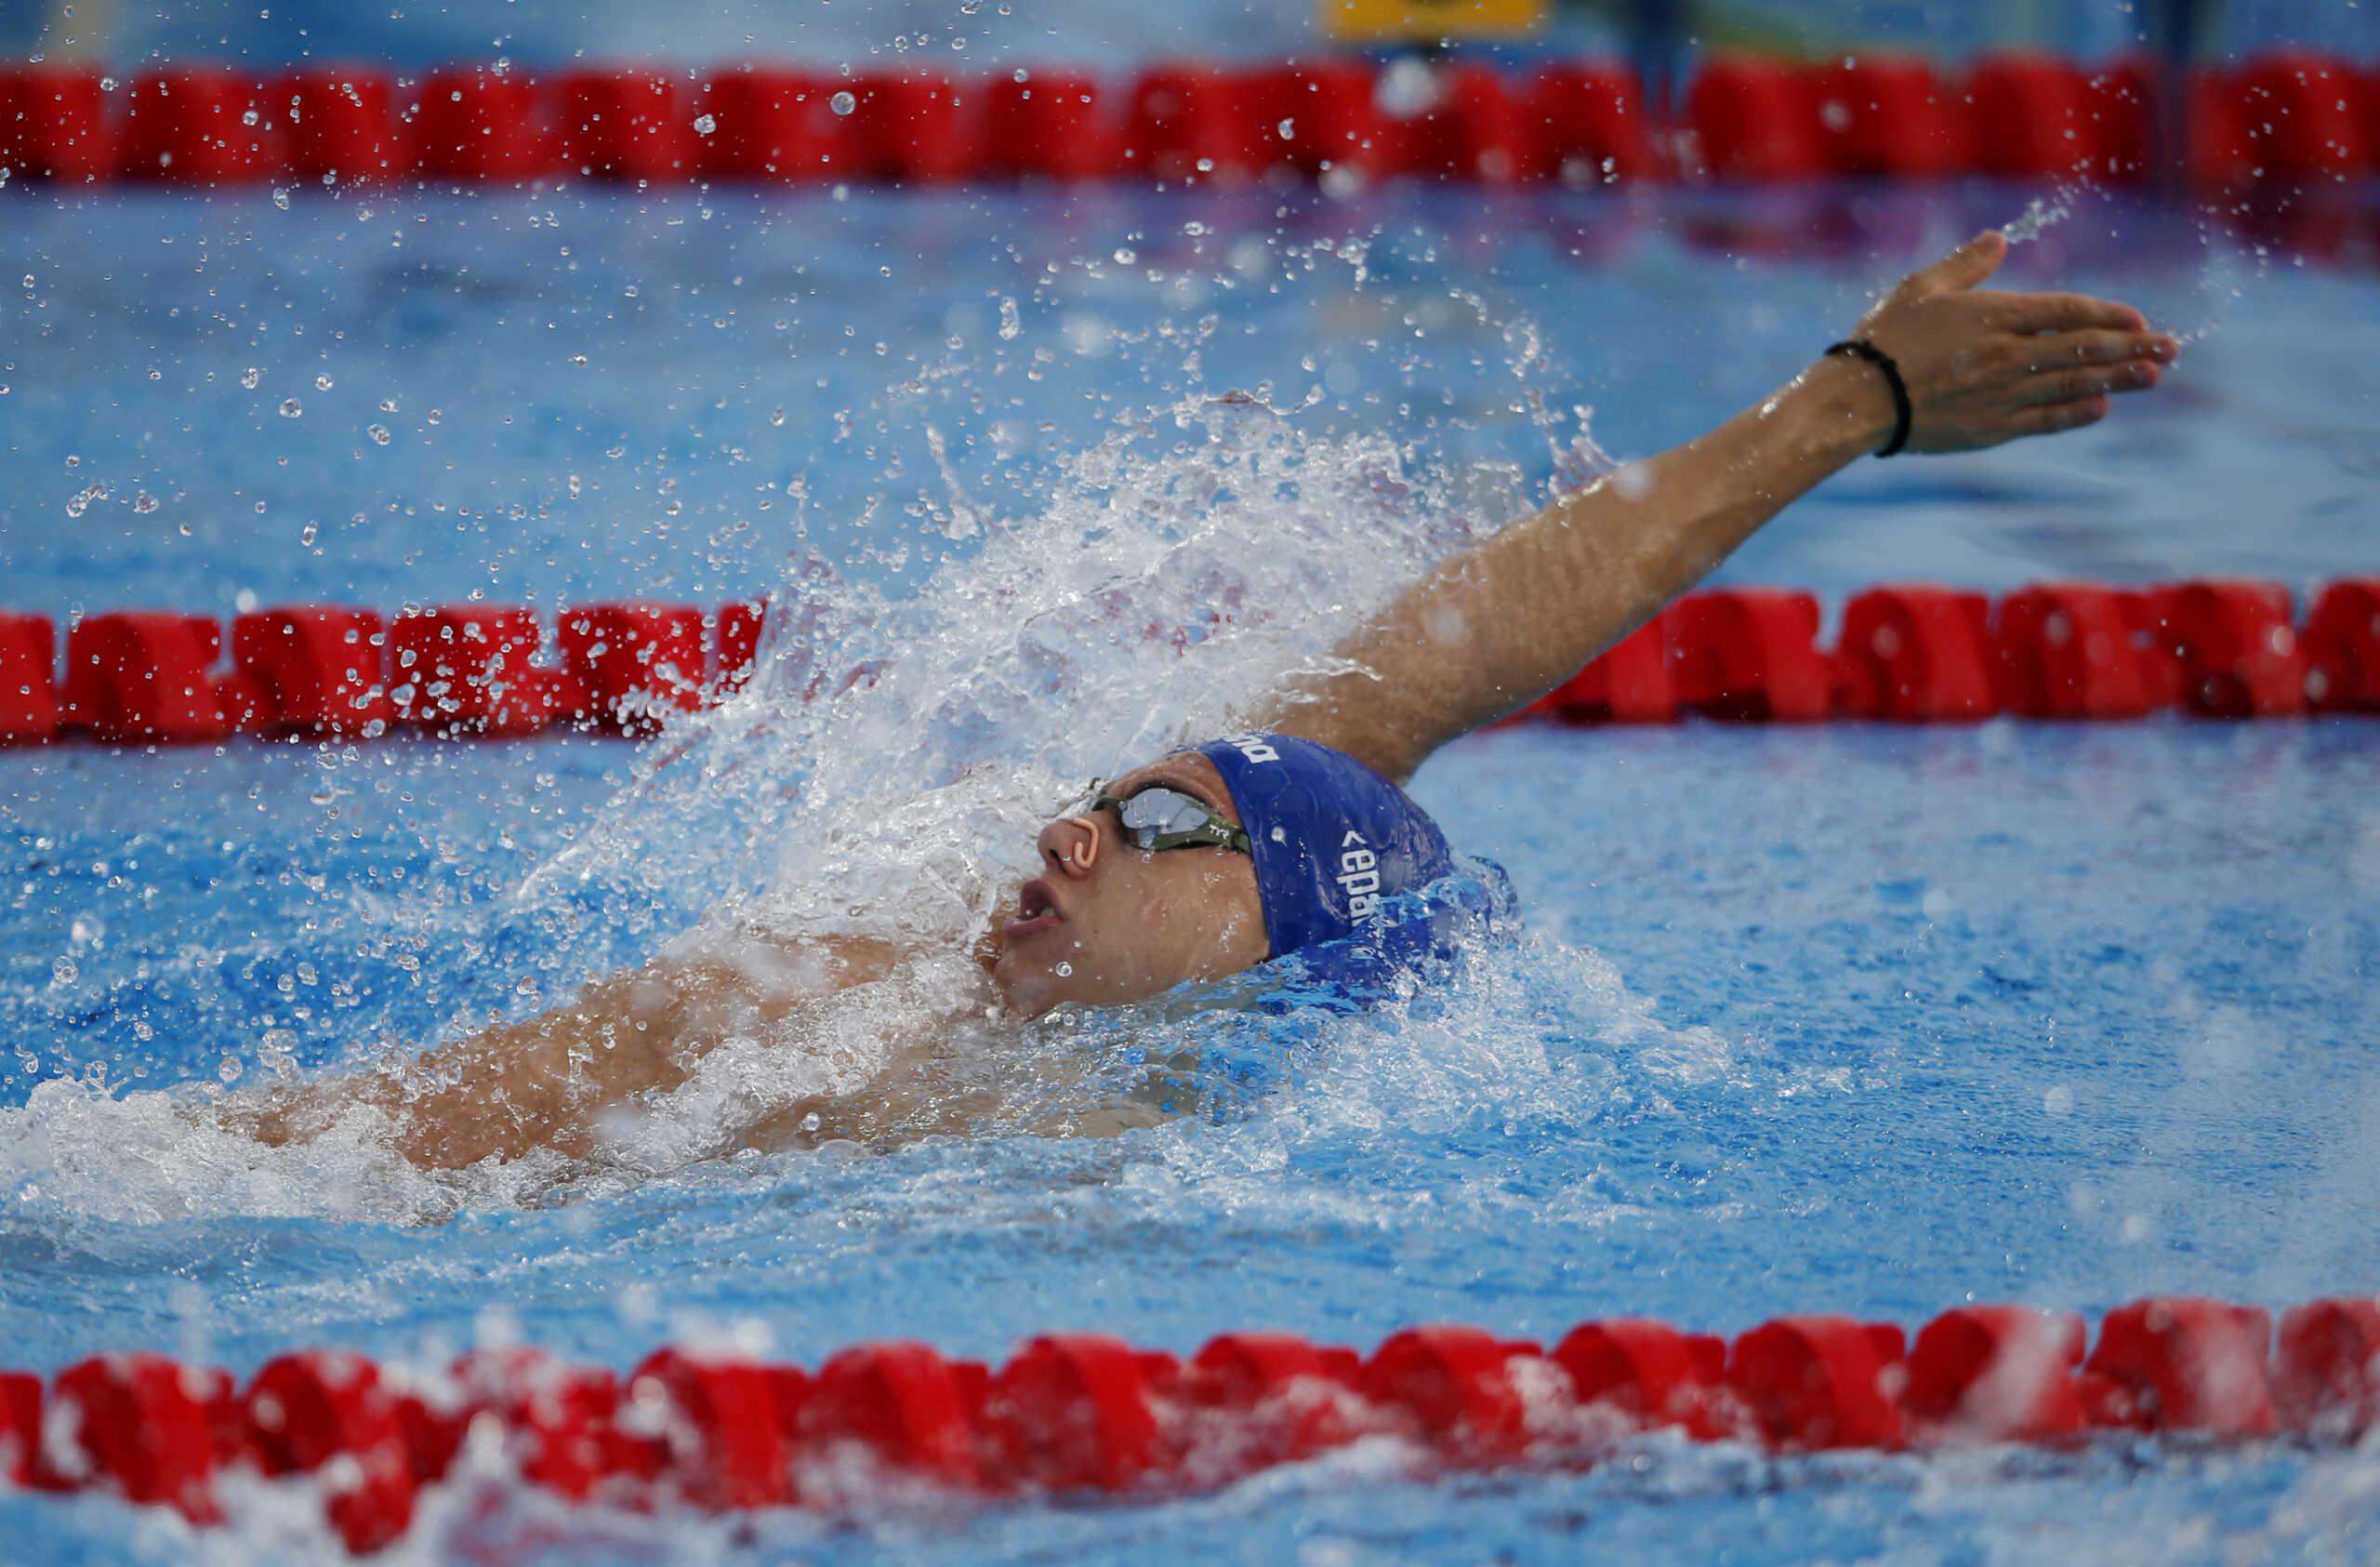 Ο Απόστολος Σίσκος κατέκτησε το ασημένιο μετάλλιο με πανελλήνιο ρεκόρ στο ευρωπαϊκό πρωτάθλημα κολύμβησης